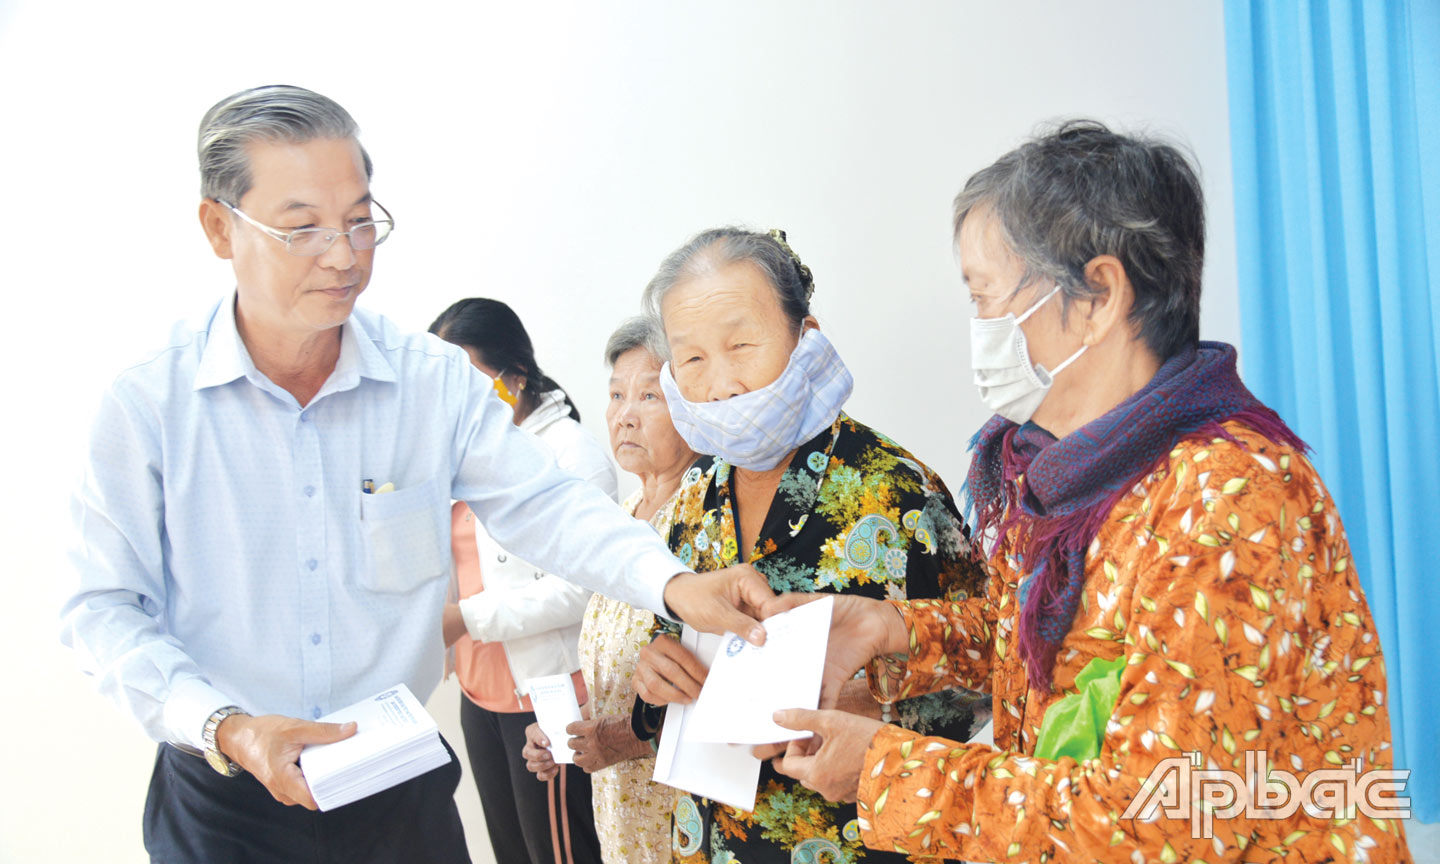 Phó Chủ tịch Ủy ban MTTQ Việt Nam tỉnh Tiền Giang Huỳnh Văn Hải trao quà tết cho người nghèo.                                                                                           Ảnh: PHƯƠNG MAI